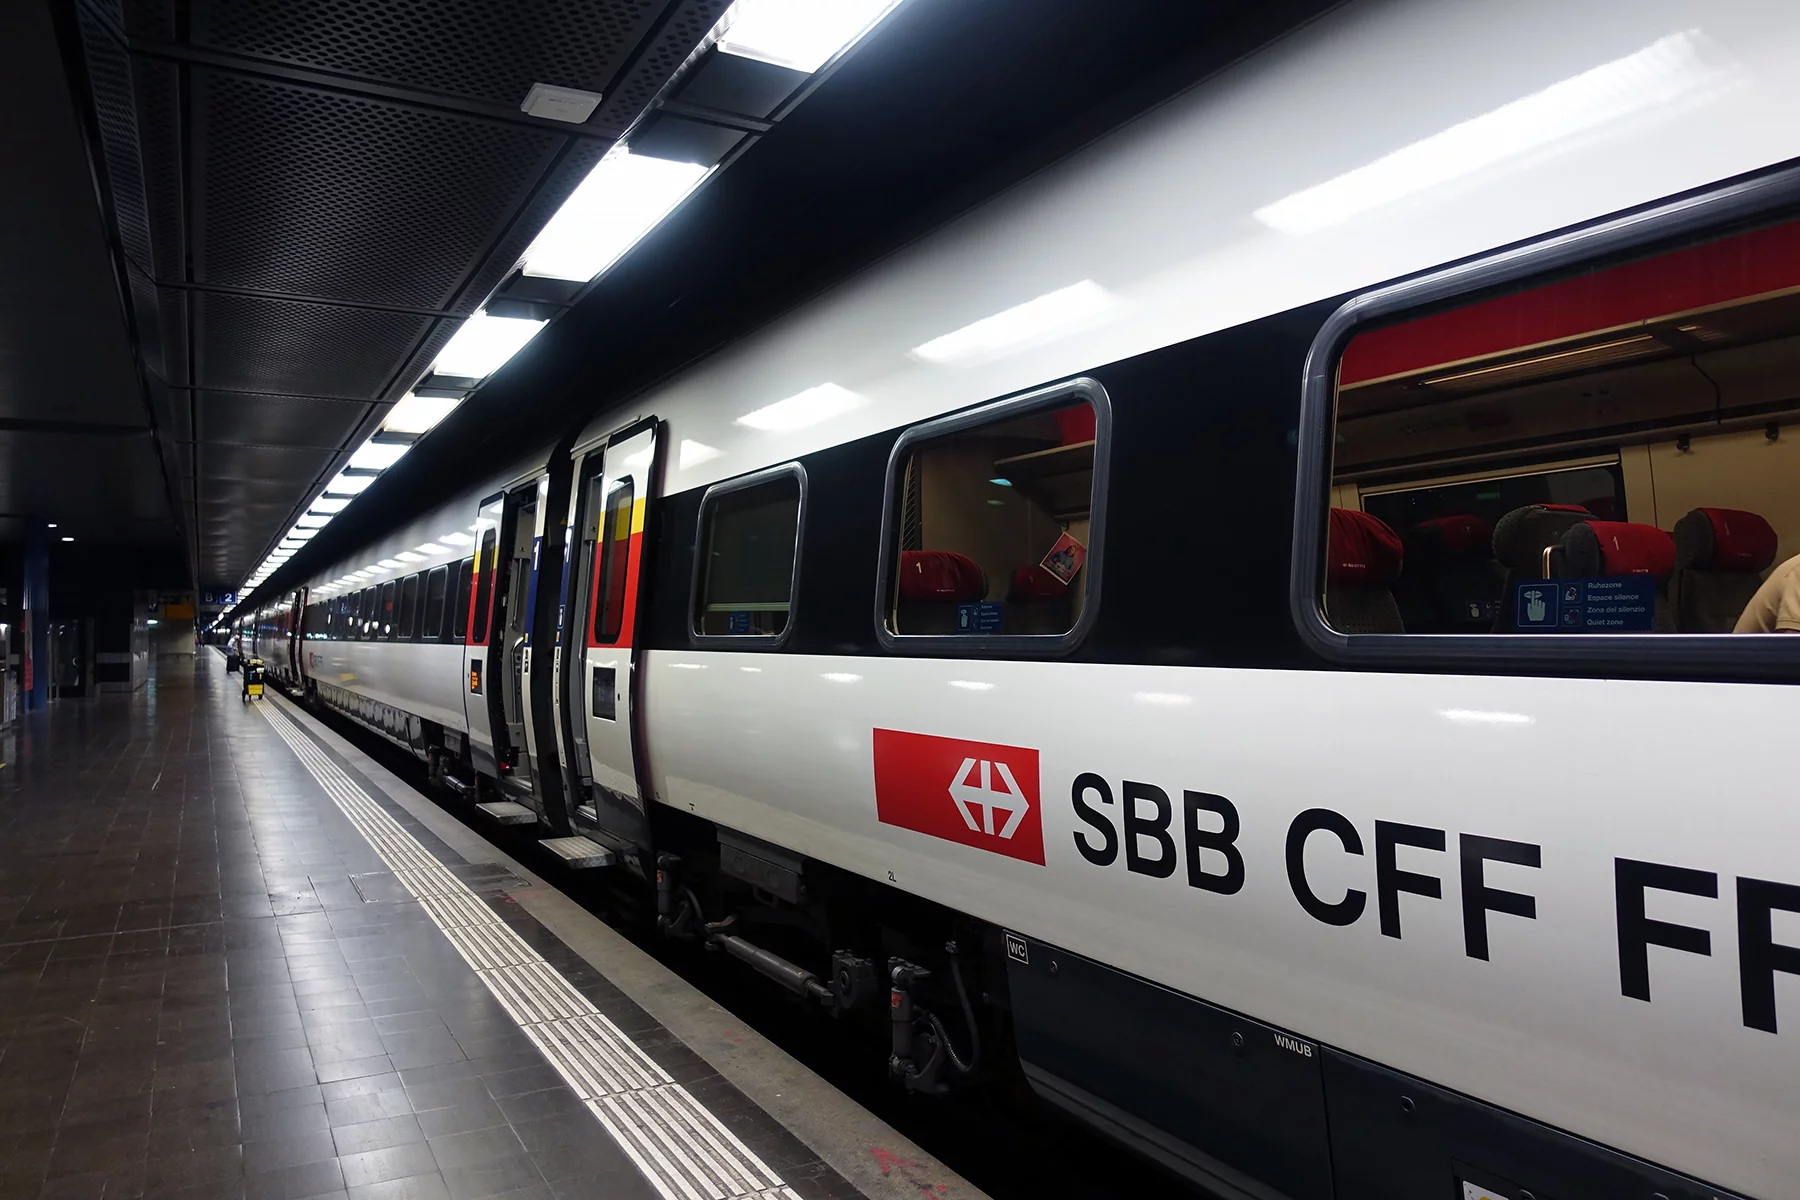 SBB train at a station platform in Geneva